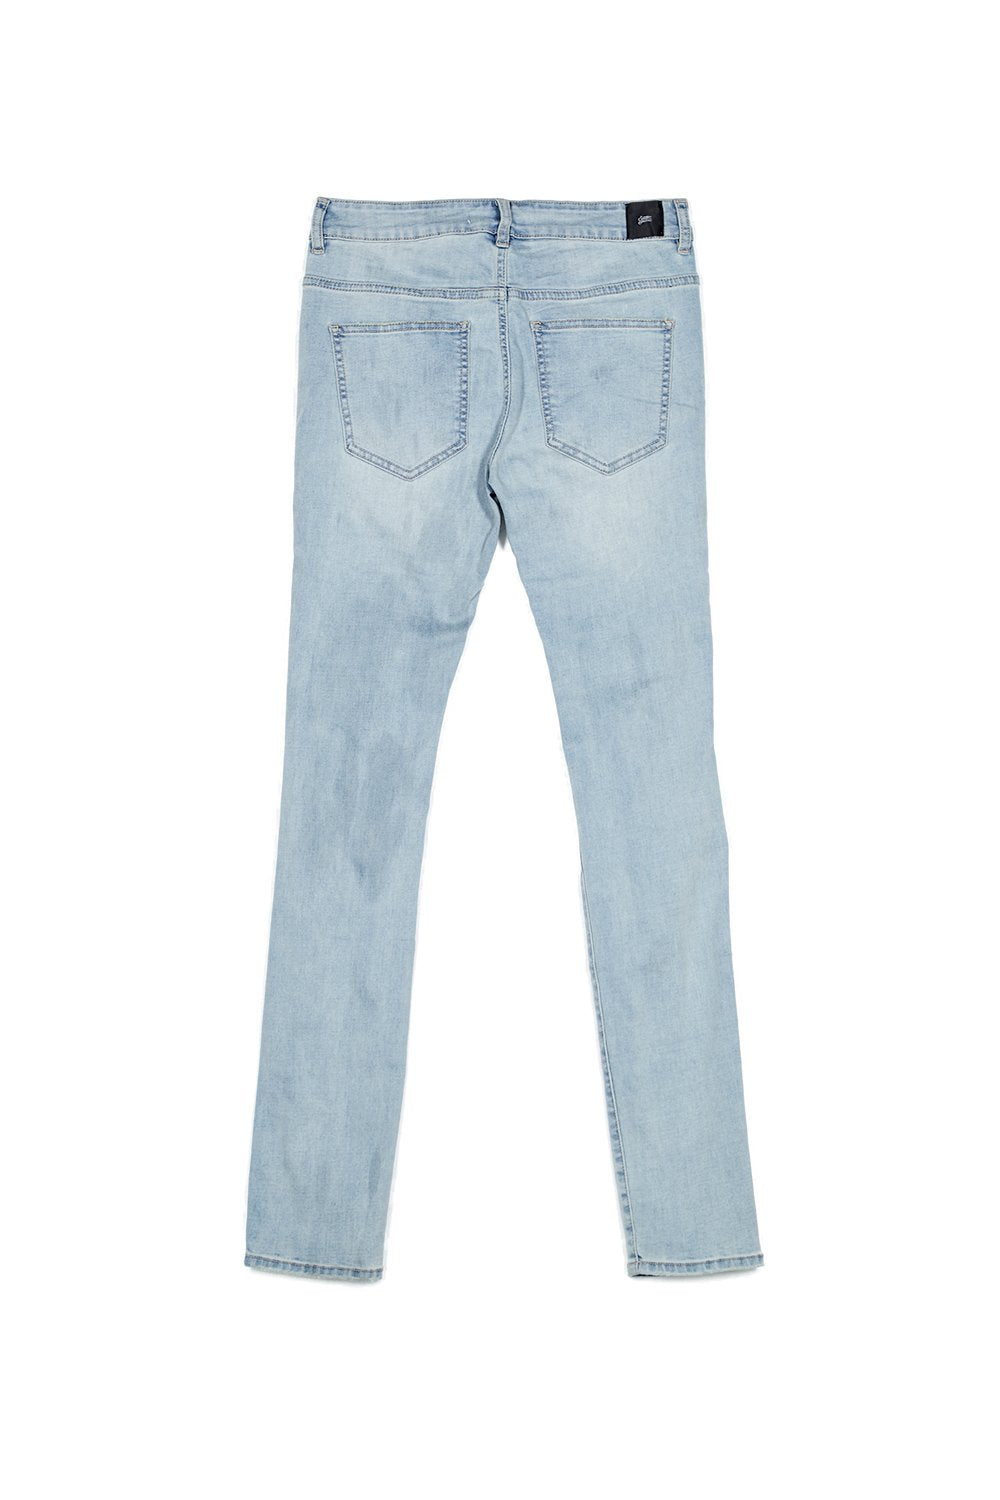 Zerrissene Jeans mit blauem Einsatz